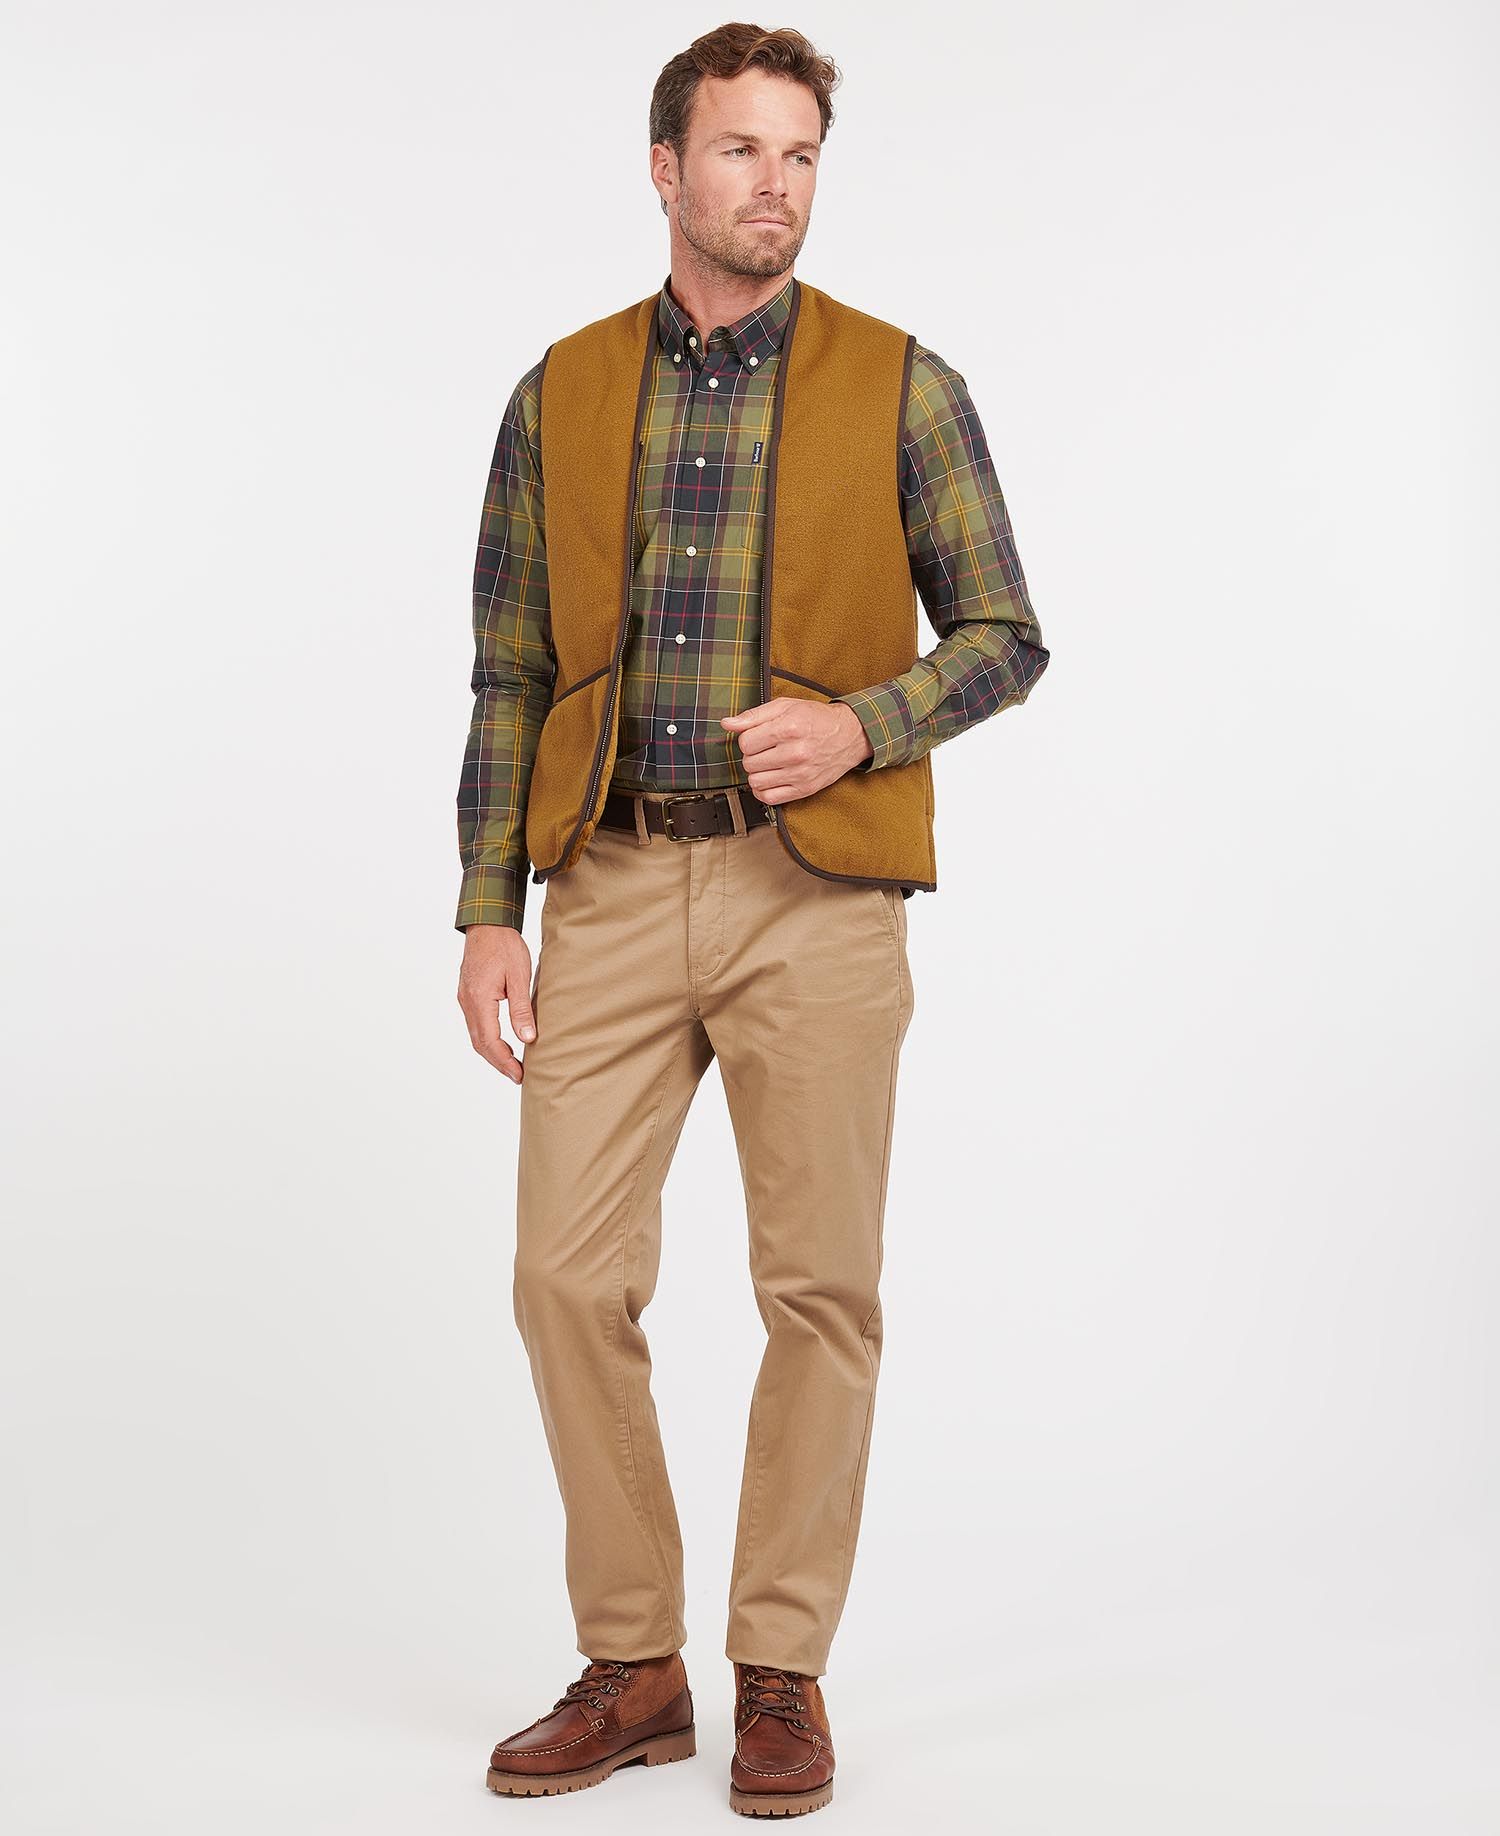 Barbour Warm Pile Waistcoat Zip-In Liner in Brown | Barbour